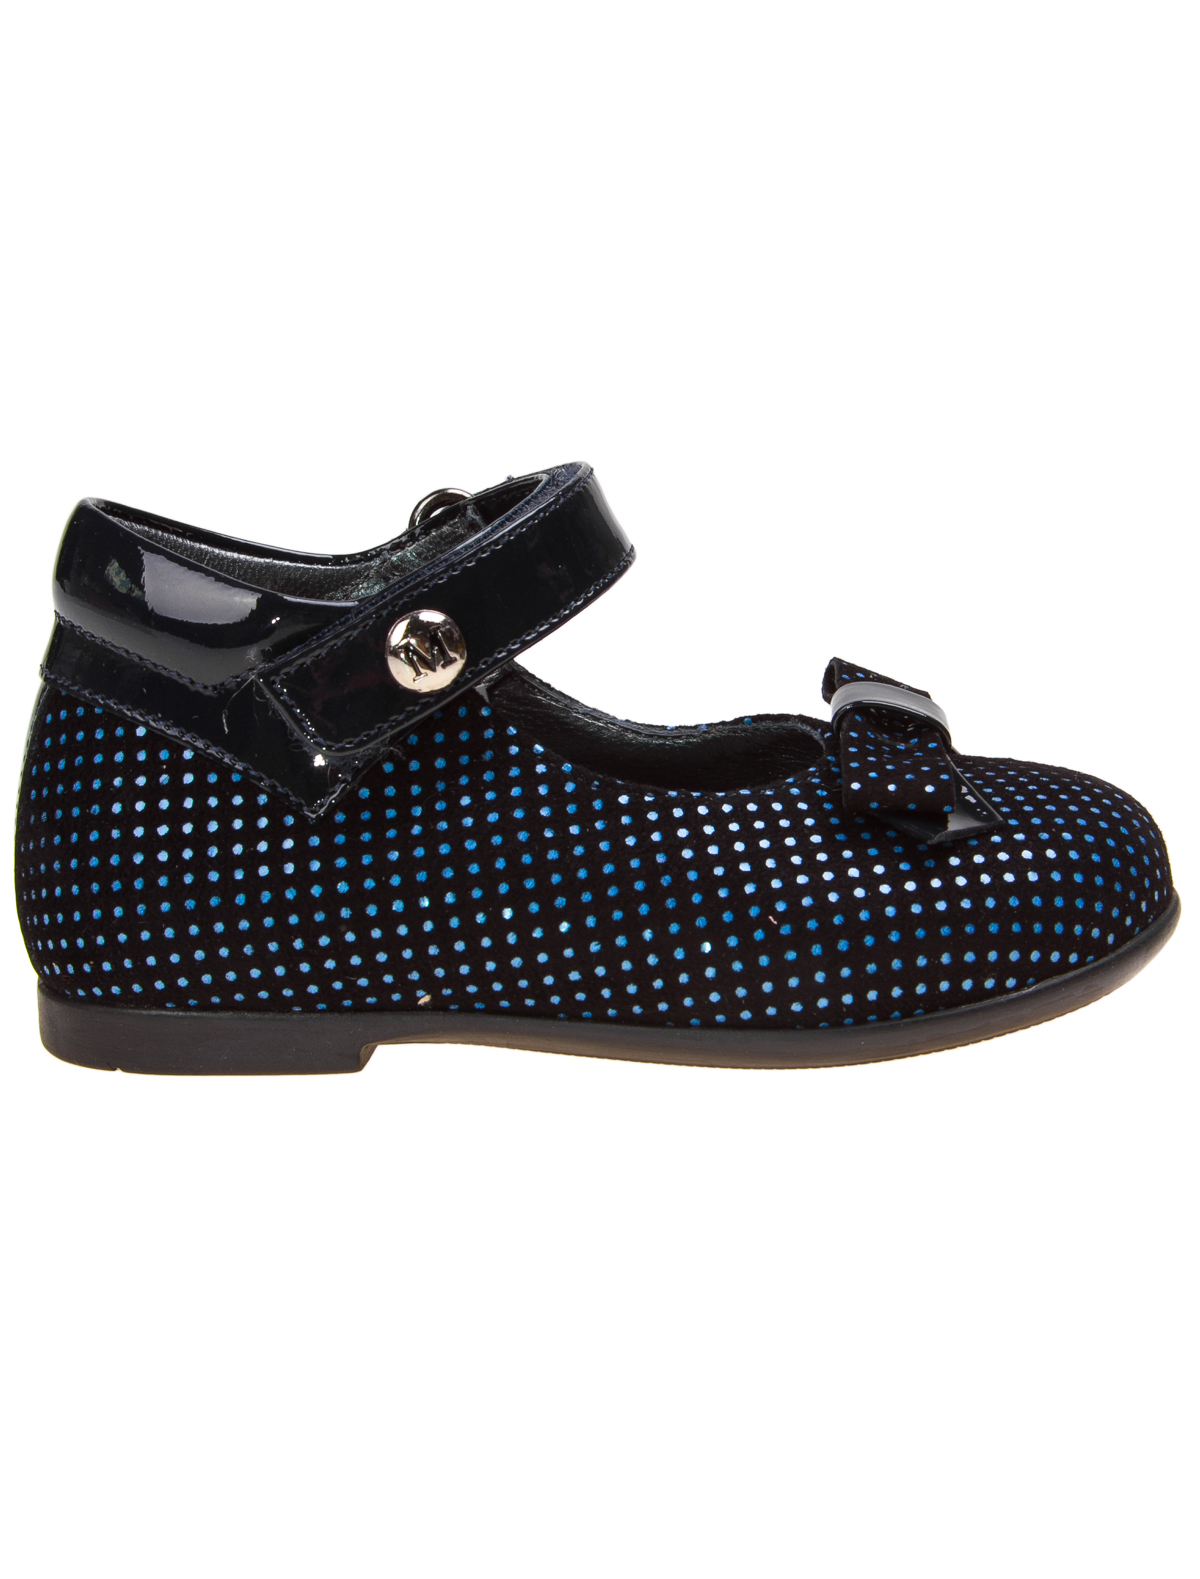 Туфли Missouri 1914287, цвет черный, размер 21 2013709780027 - фото 2